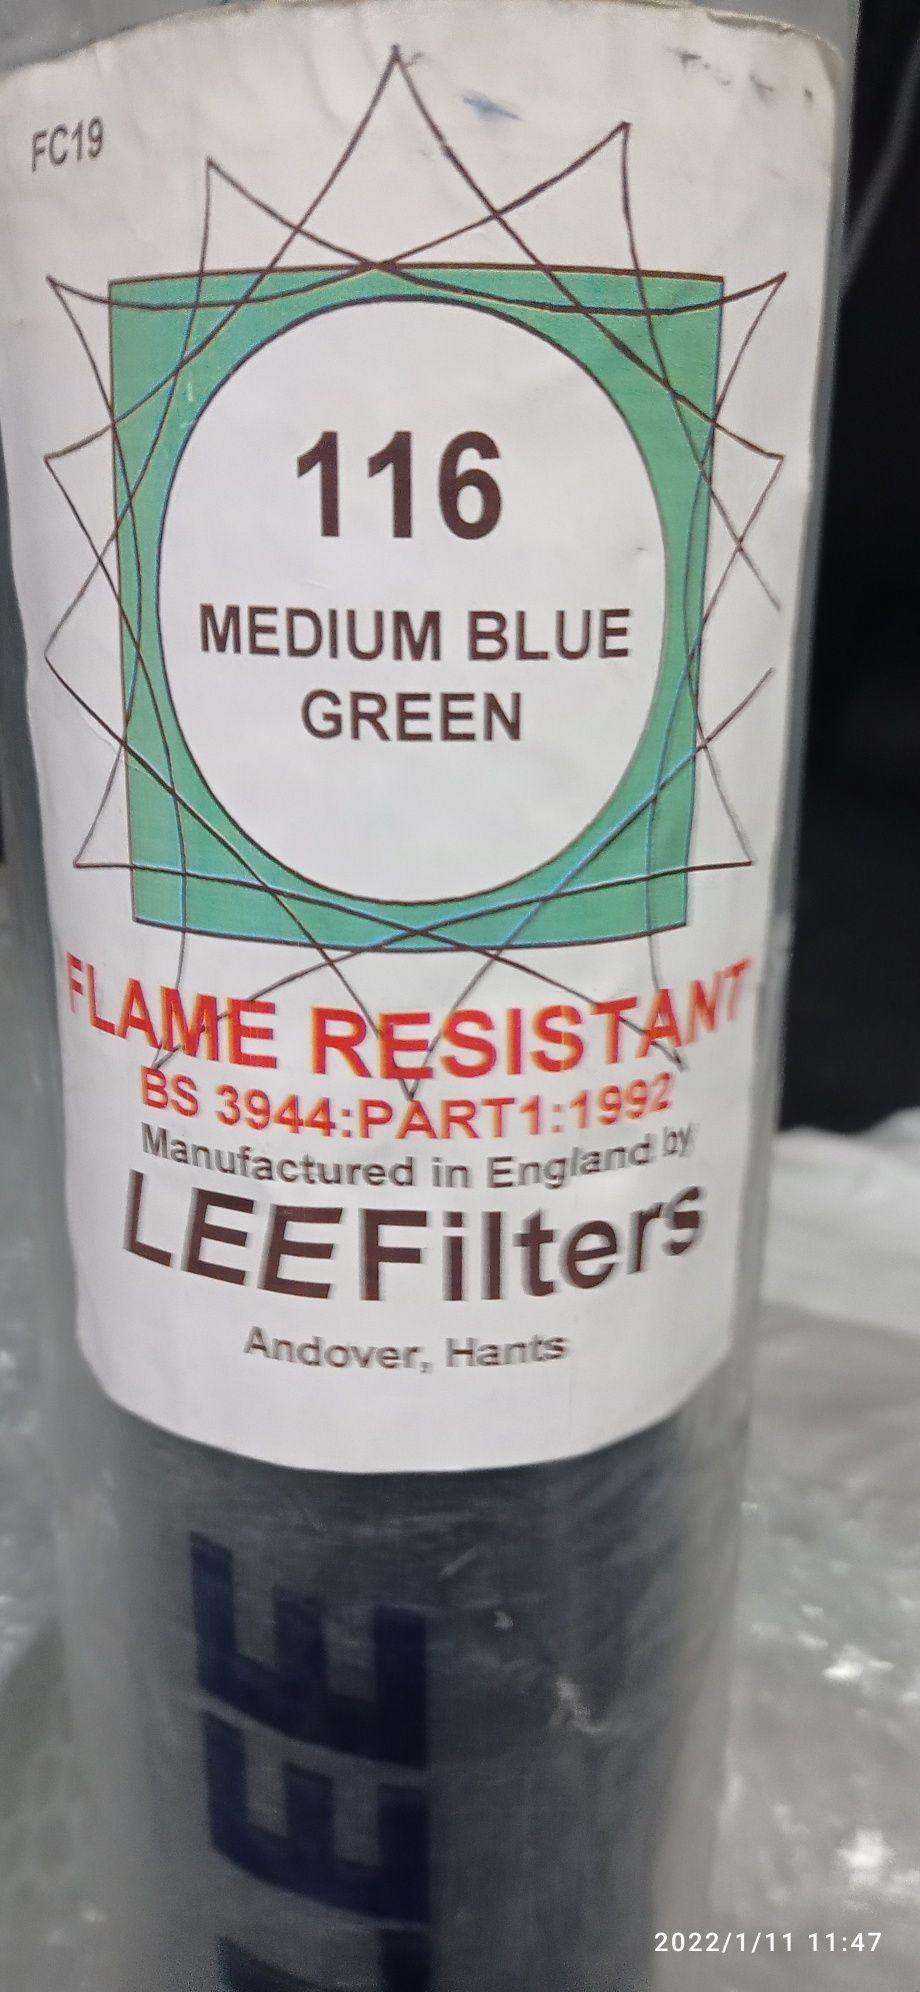 Cветофильтры LEE Filters термостойкие цвета всего 3